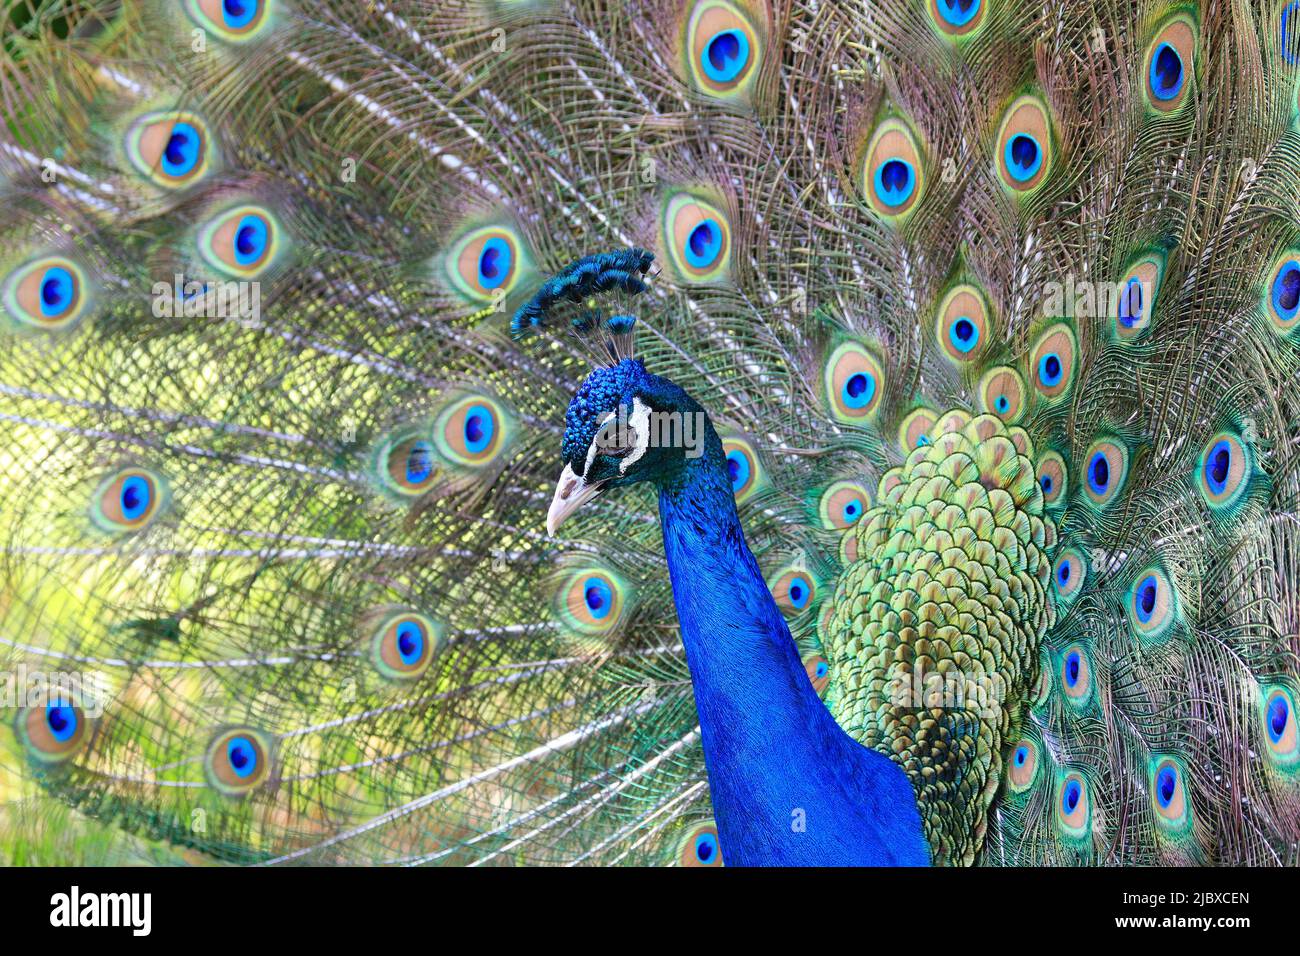 Elegante y colorido retrato de cola de pavo real Foto de stock